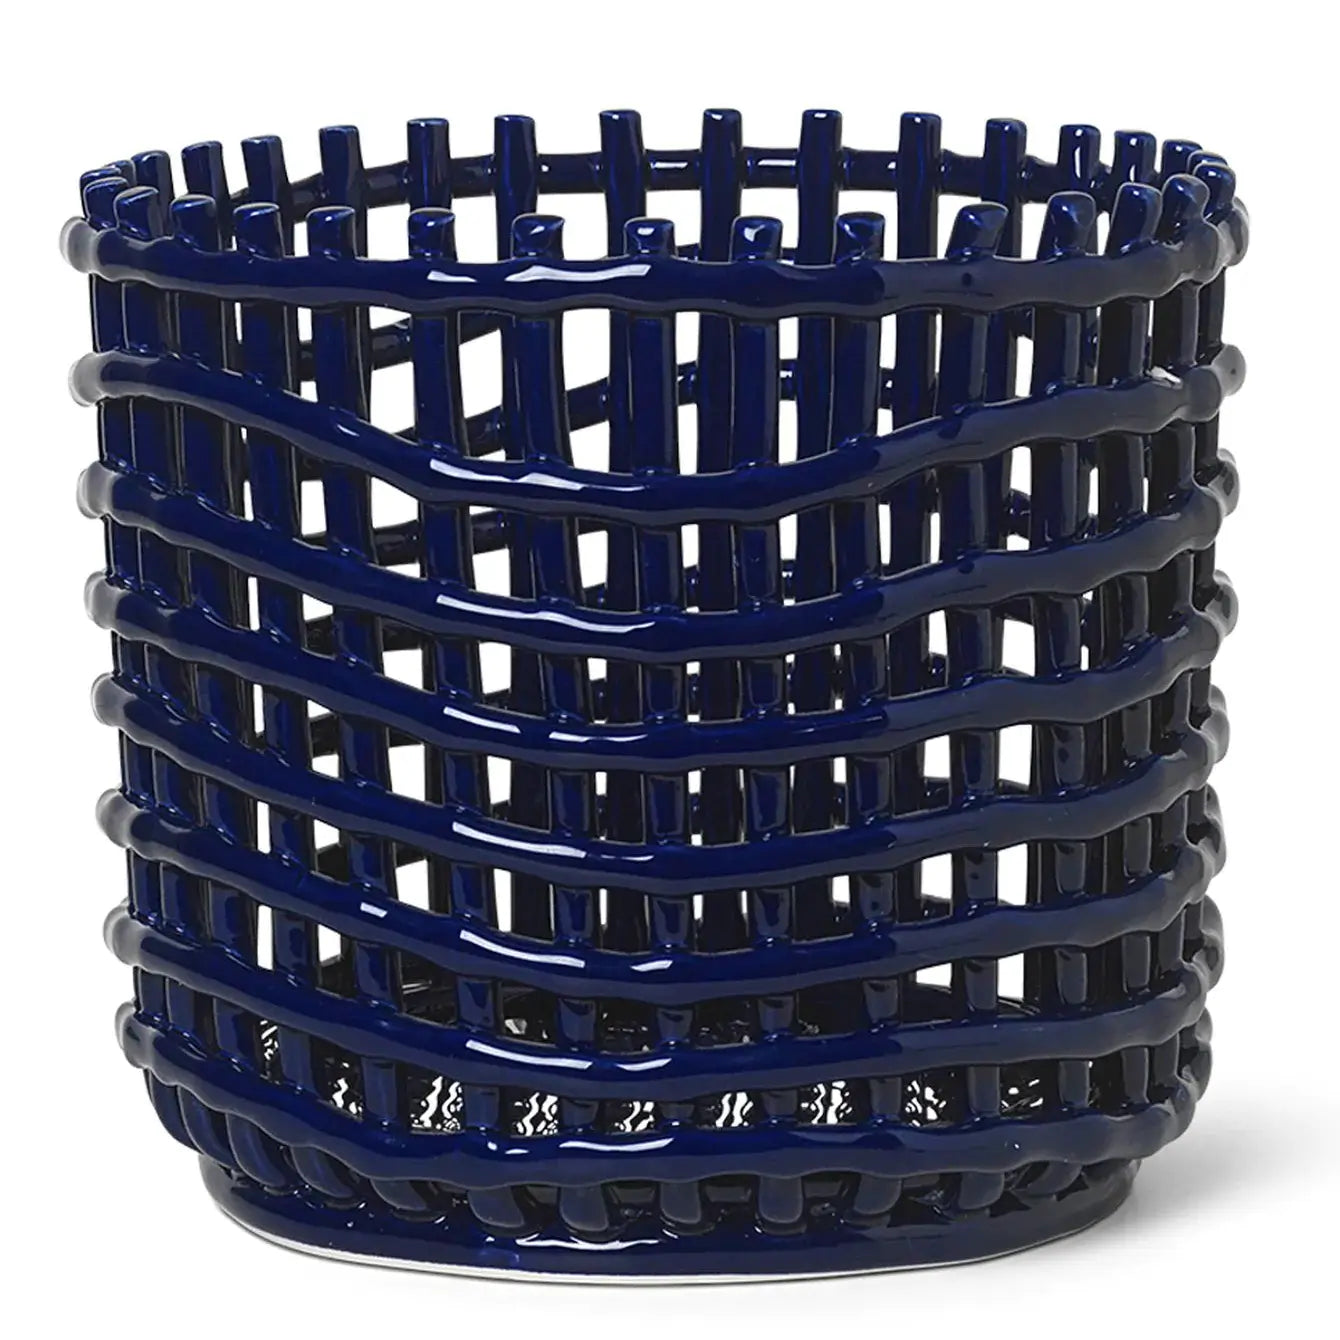 Ferm Living Ceramic Large Basket